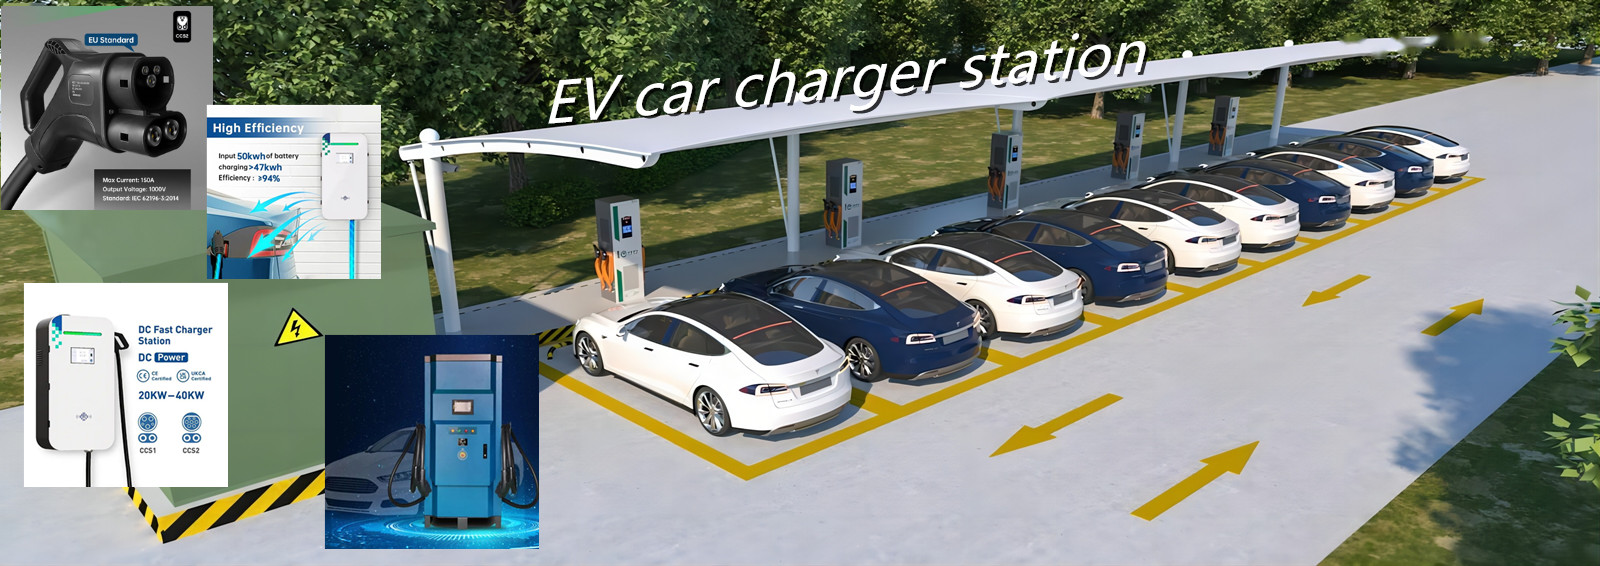 EV car charger station